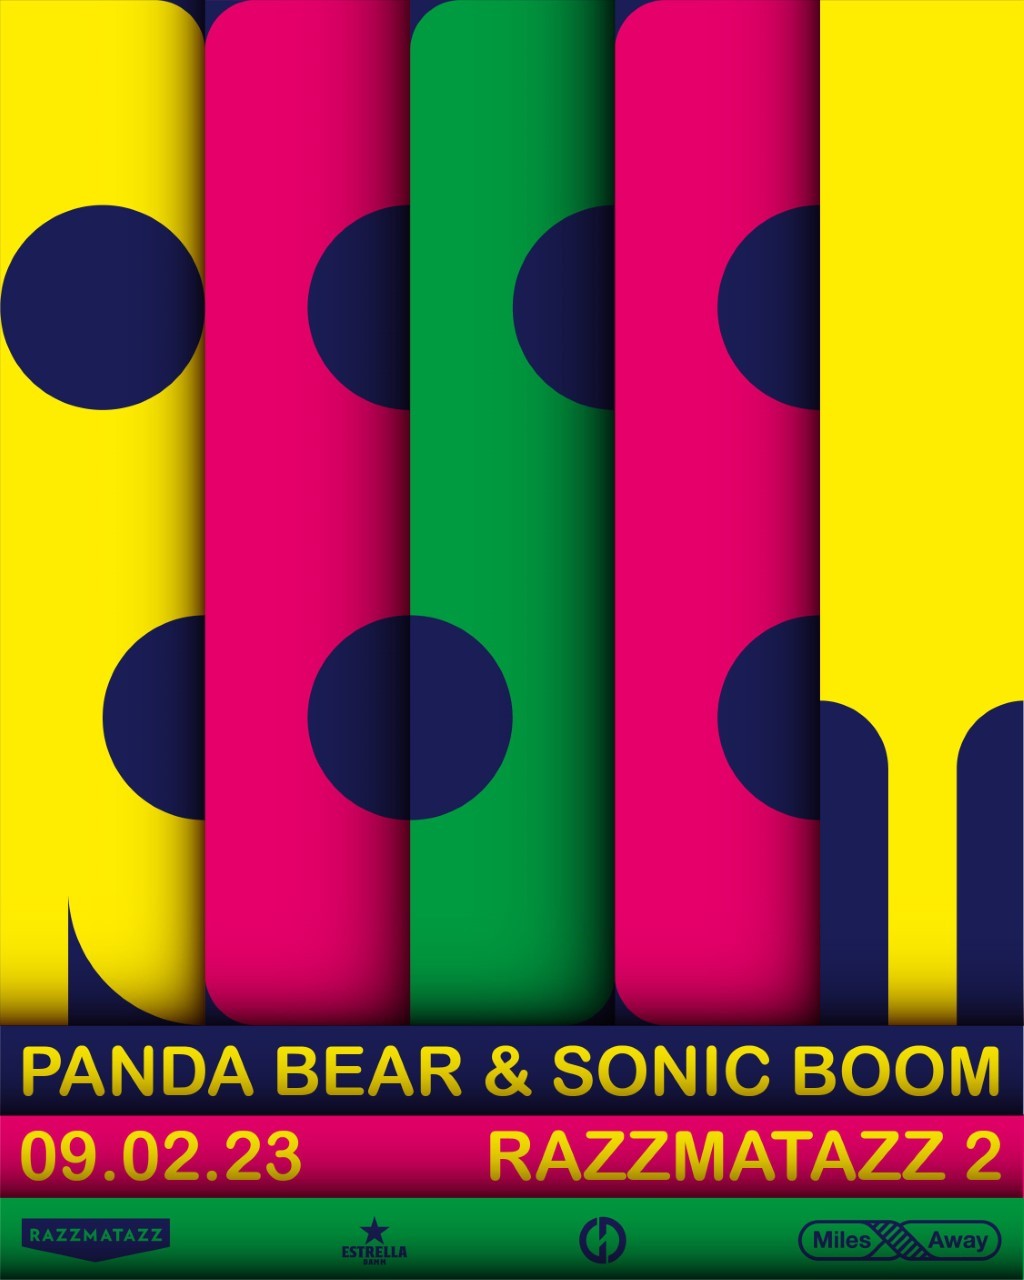 Agenda de giras, conciertos y festivales - Página 3 Thumbnail_Panda+Sonic-post